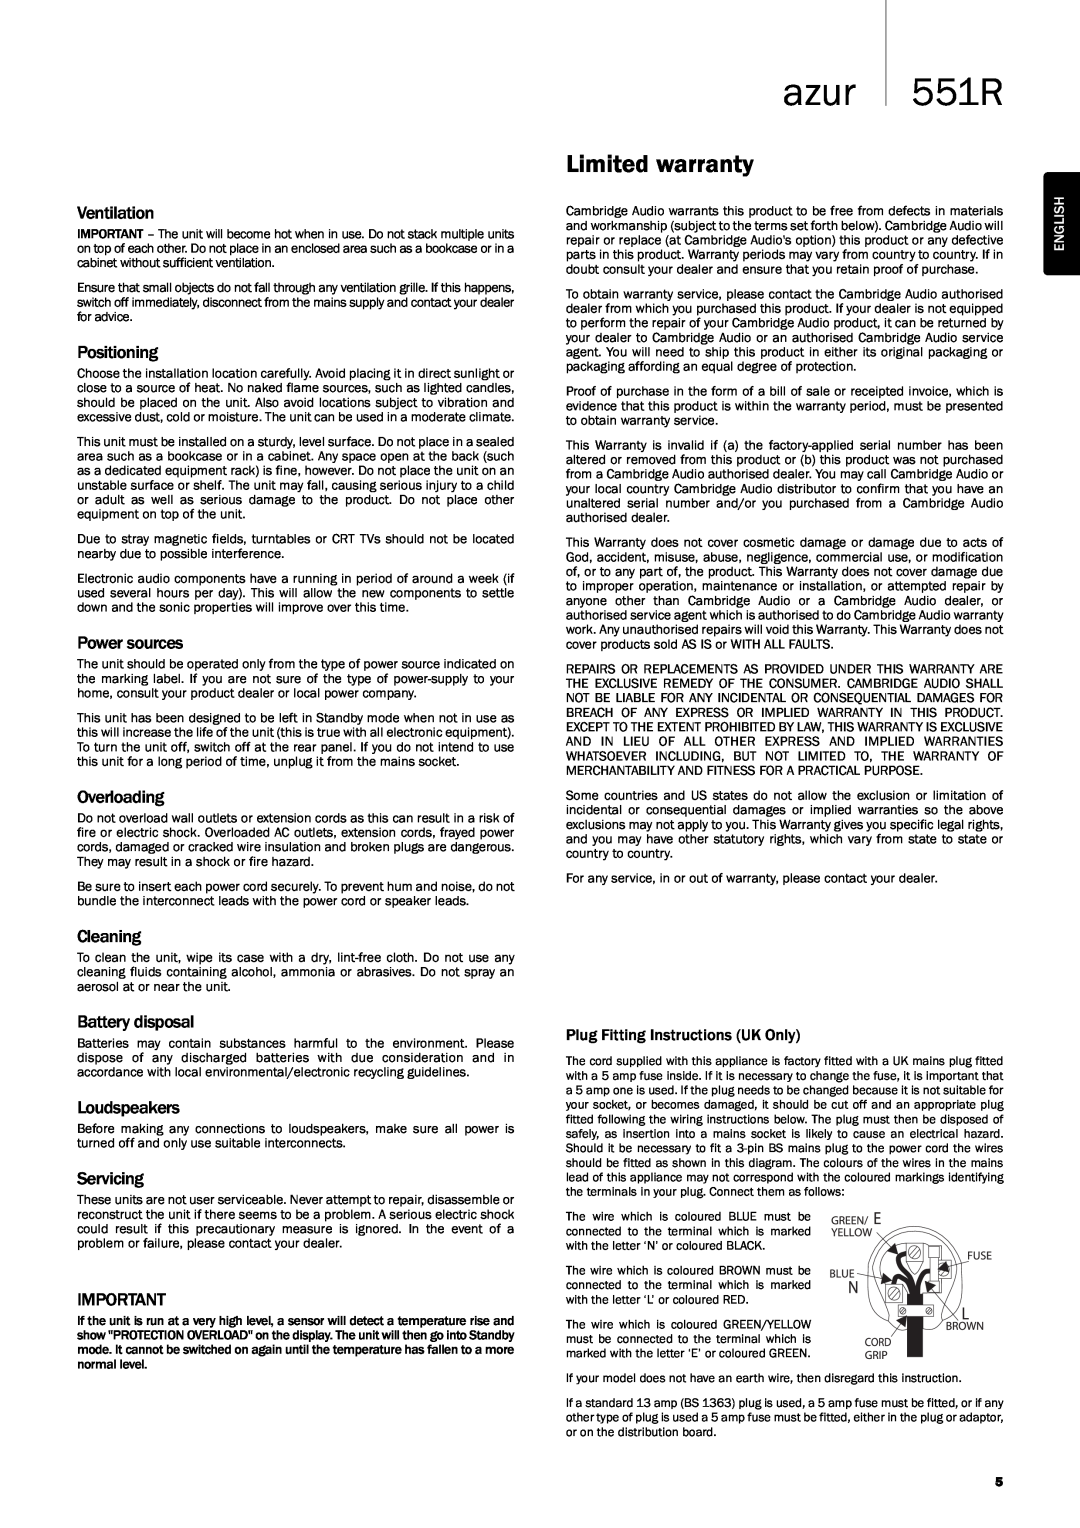 Cambridge Audio 551R user manual azur, Limitedwarranty, PlugFittingInstructionsUKOnly 